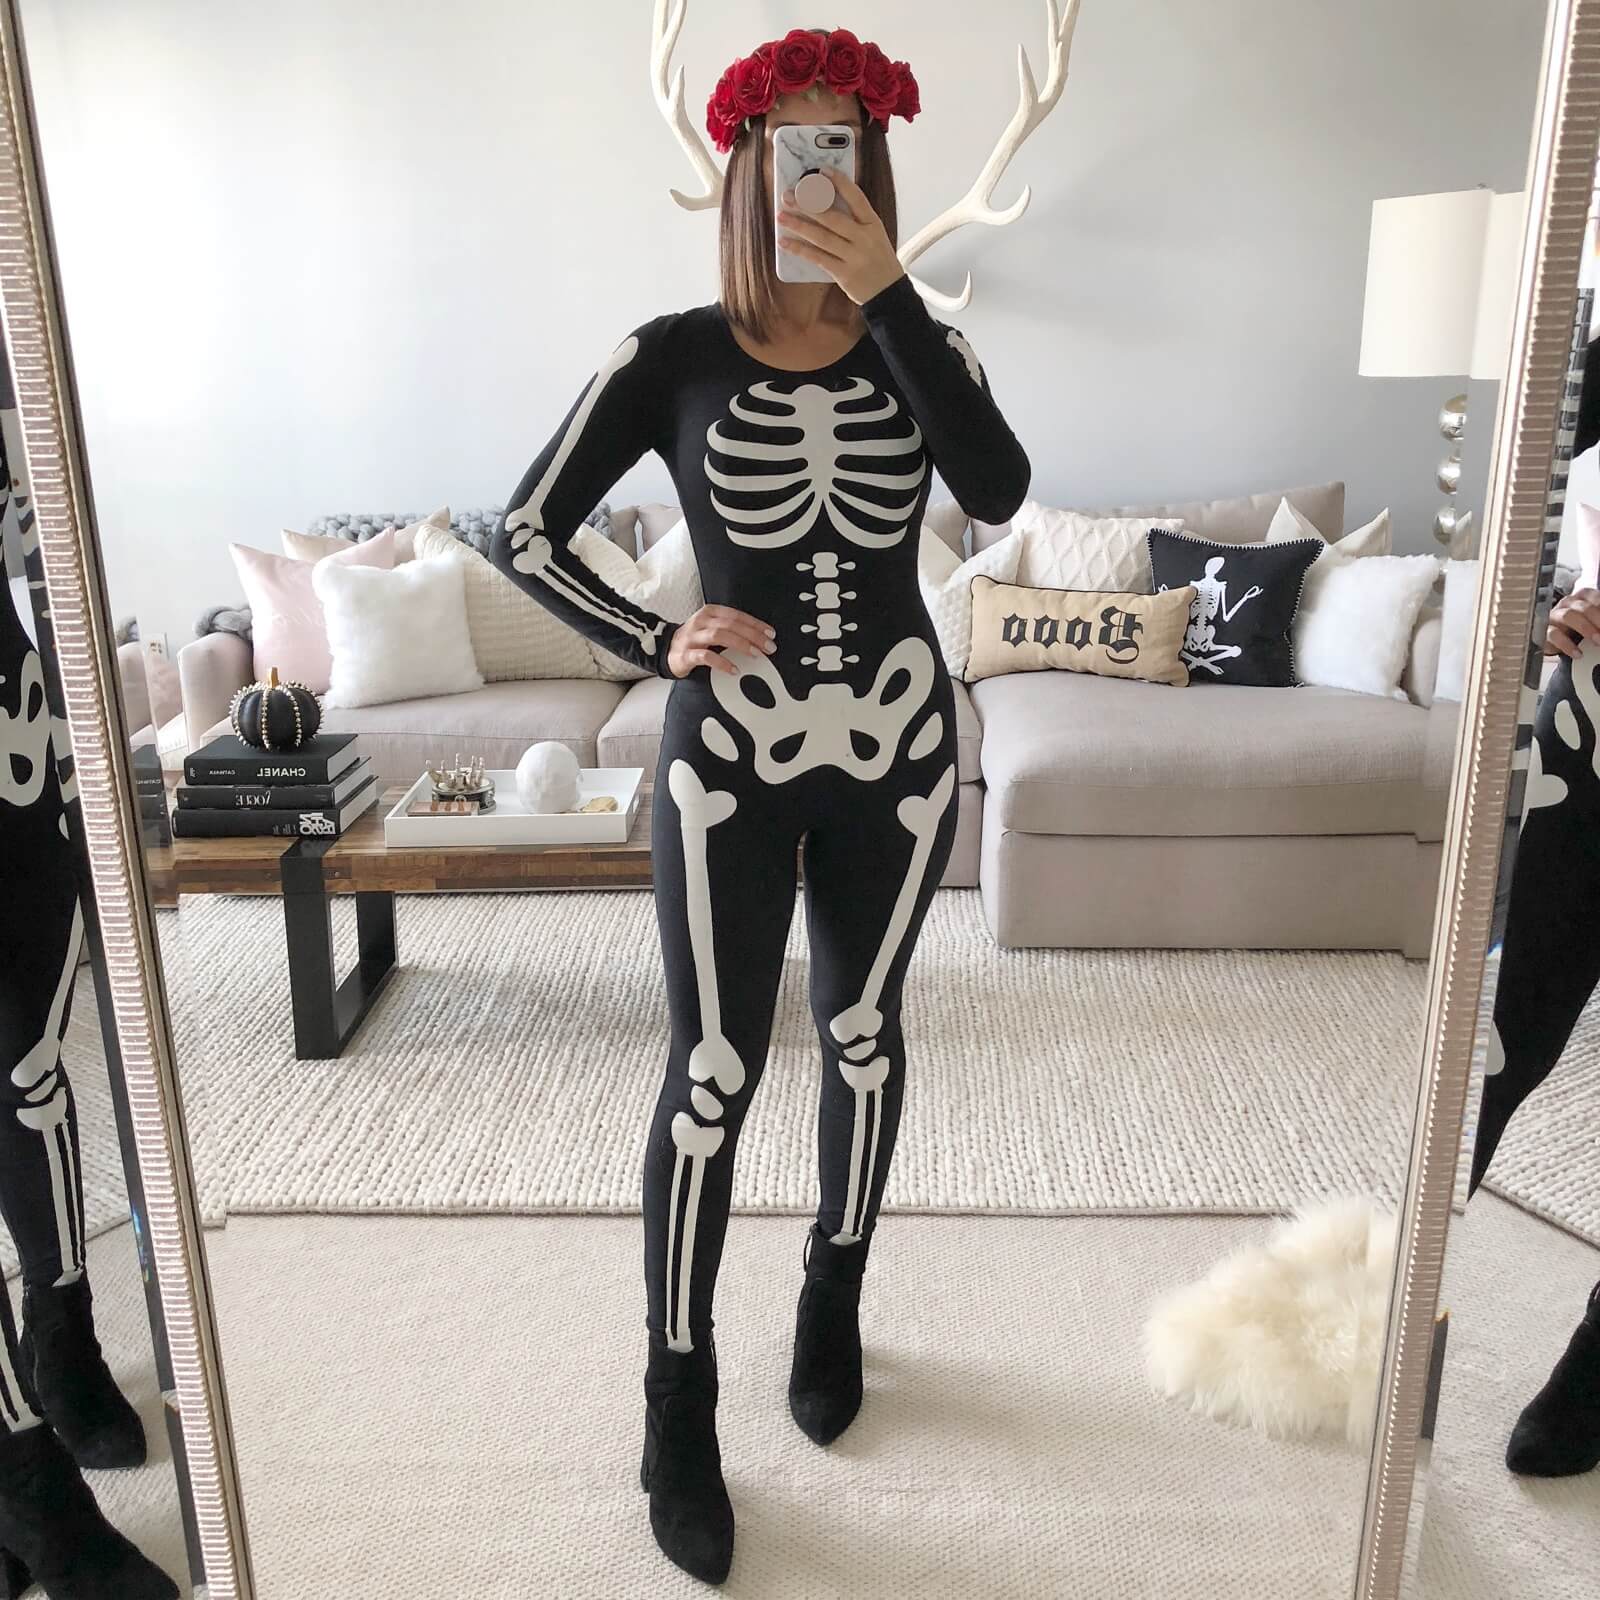 Beautiful Skeleton Costume Idea For Adults